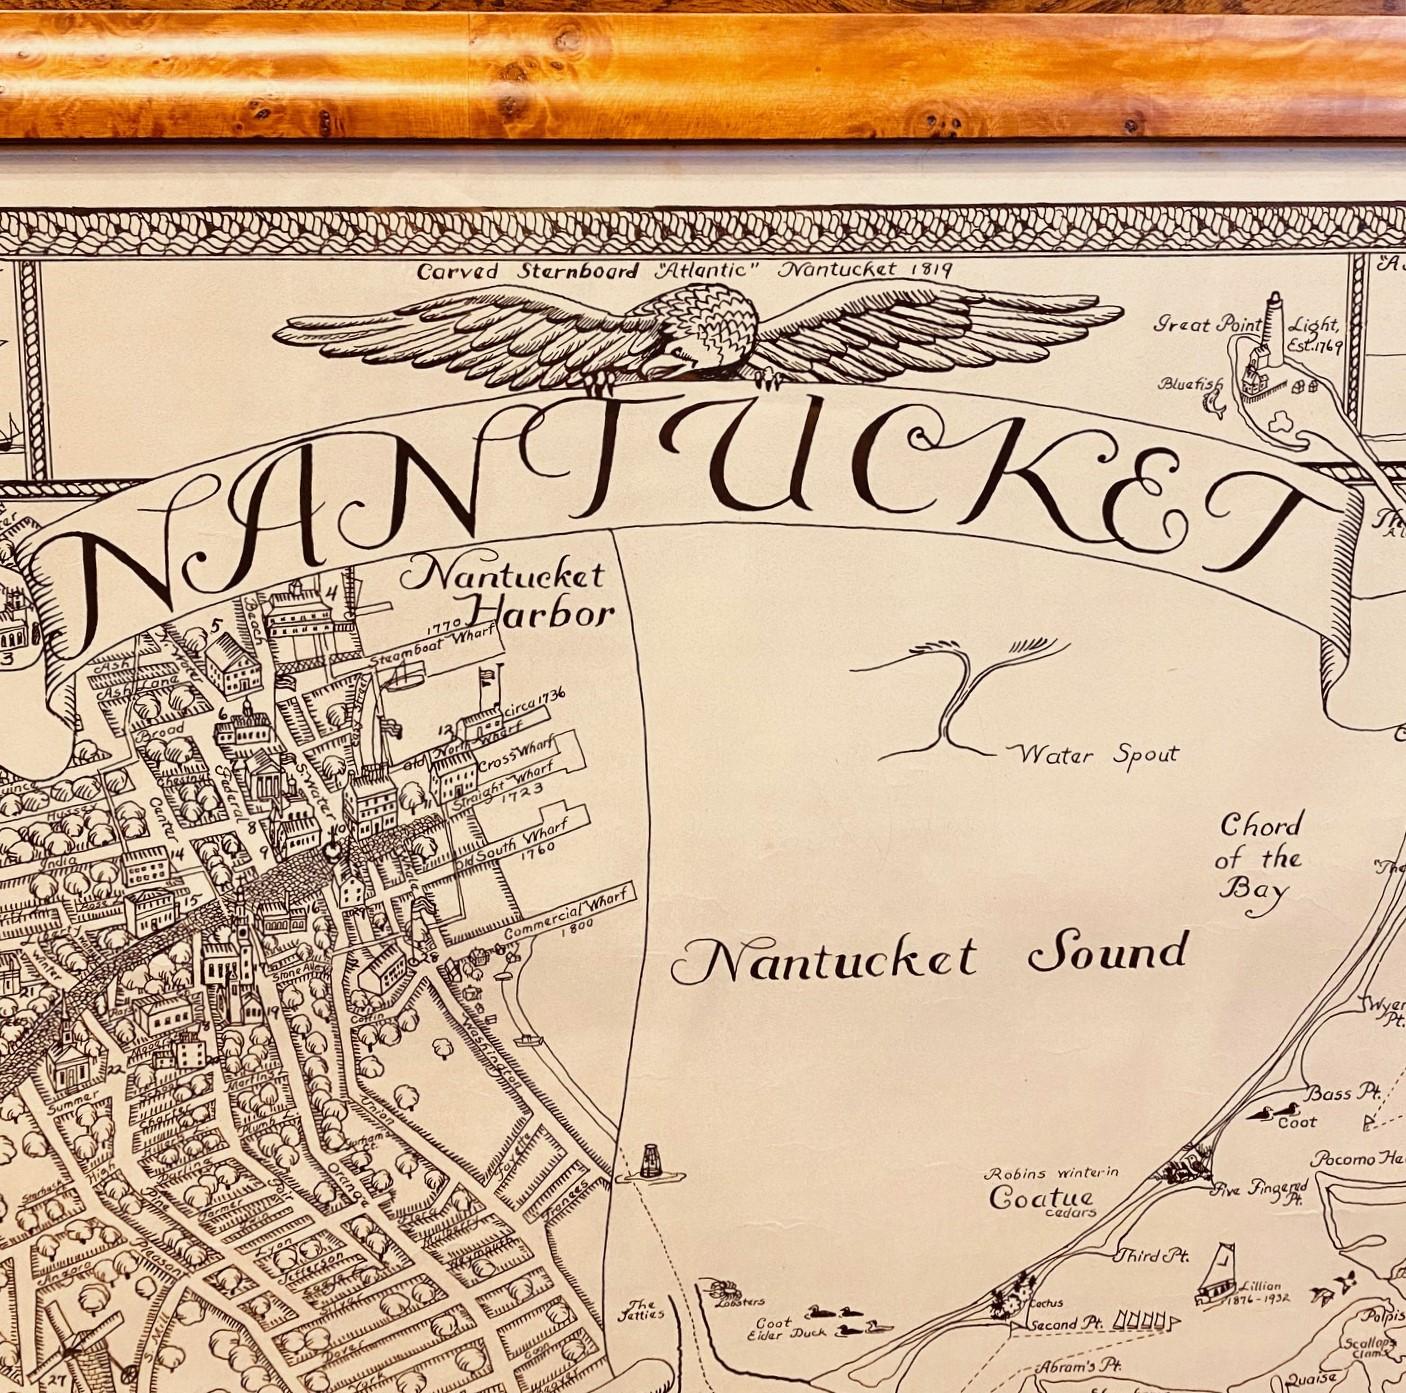 Vintage Karte von Nantucket Town von Ruth Haviland Sutton, 1946, eine klassische touristische Karte der Insel Nantucket, die historische Wahrzeichen und geografische Details zusammen mit dekorativen Bildern zeigt und eine Vergrößerung von Nantucket